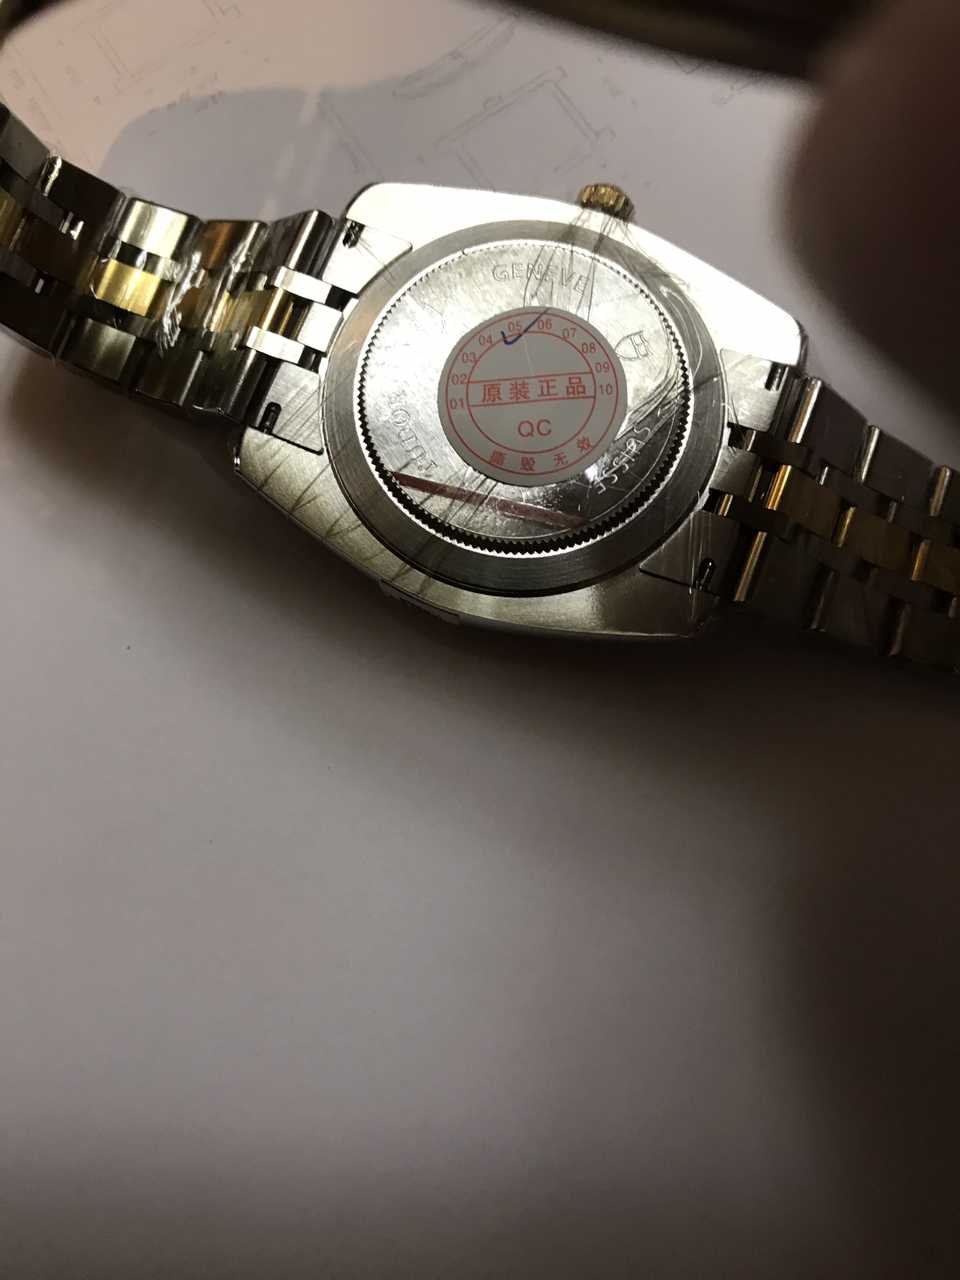 帝舵21013-62583-10DI(黑色)手表【表友晒单作业】验证过绝对...